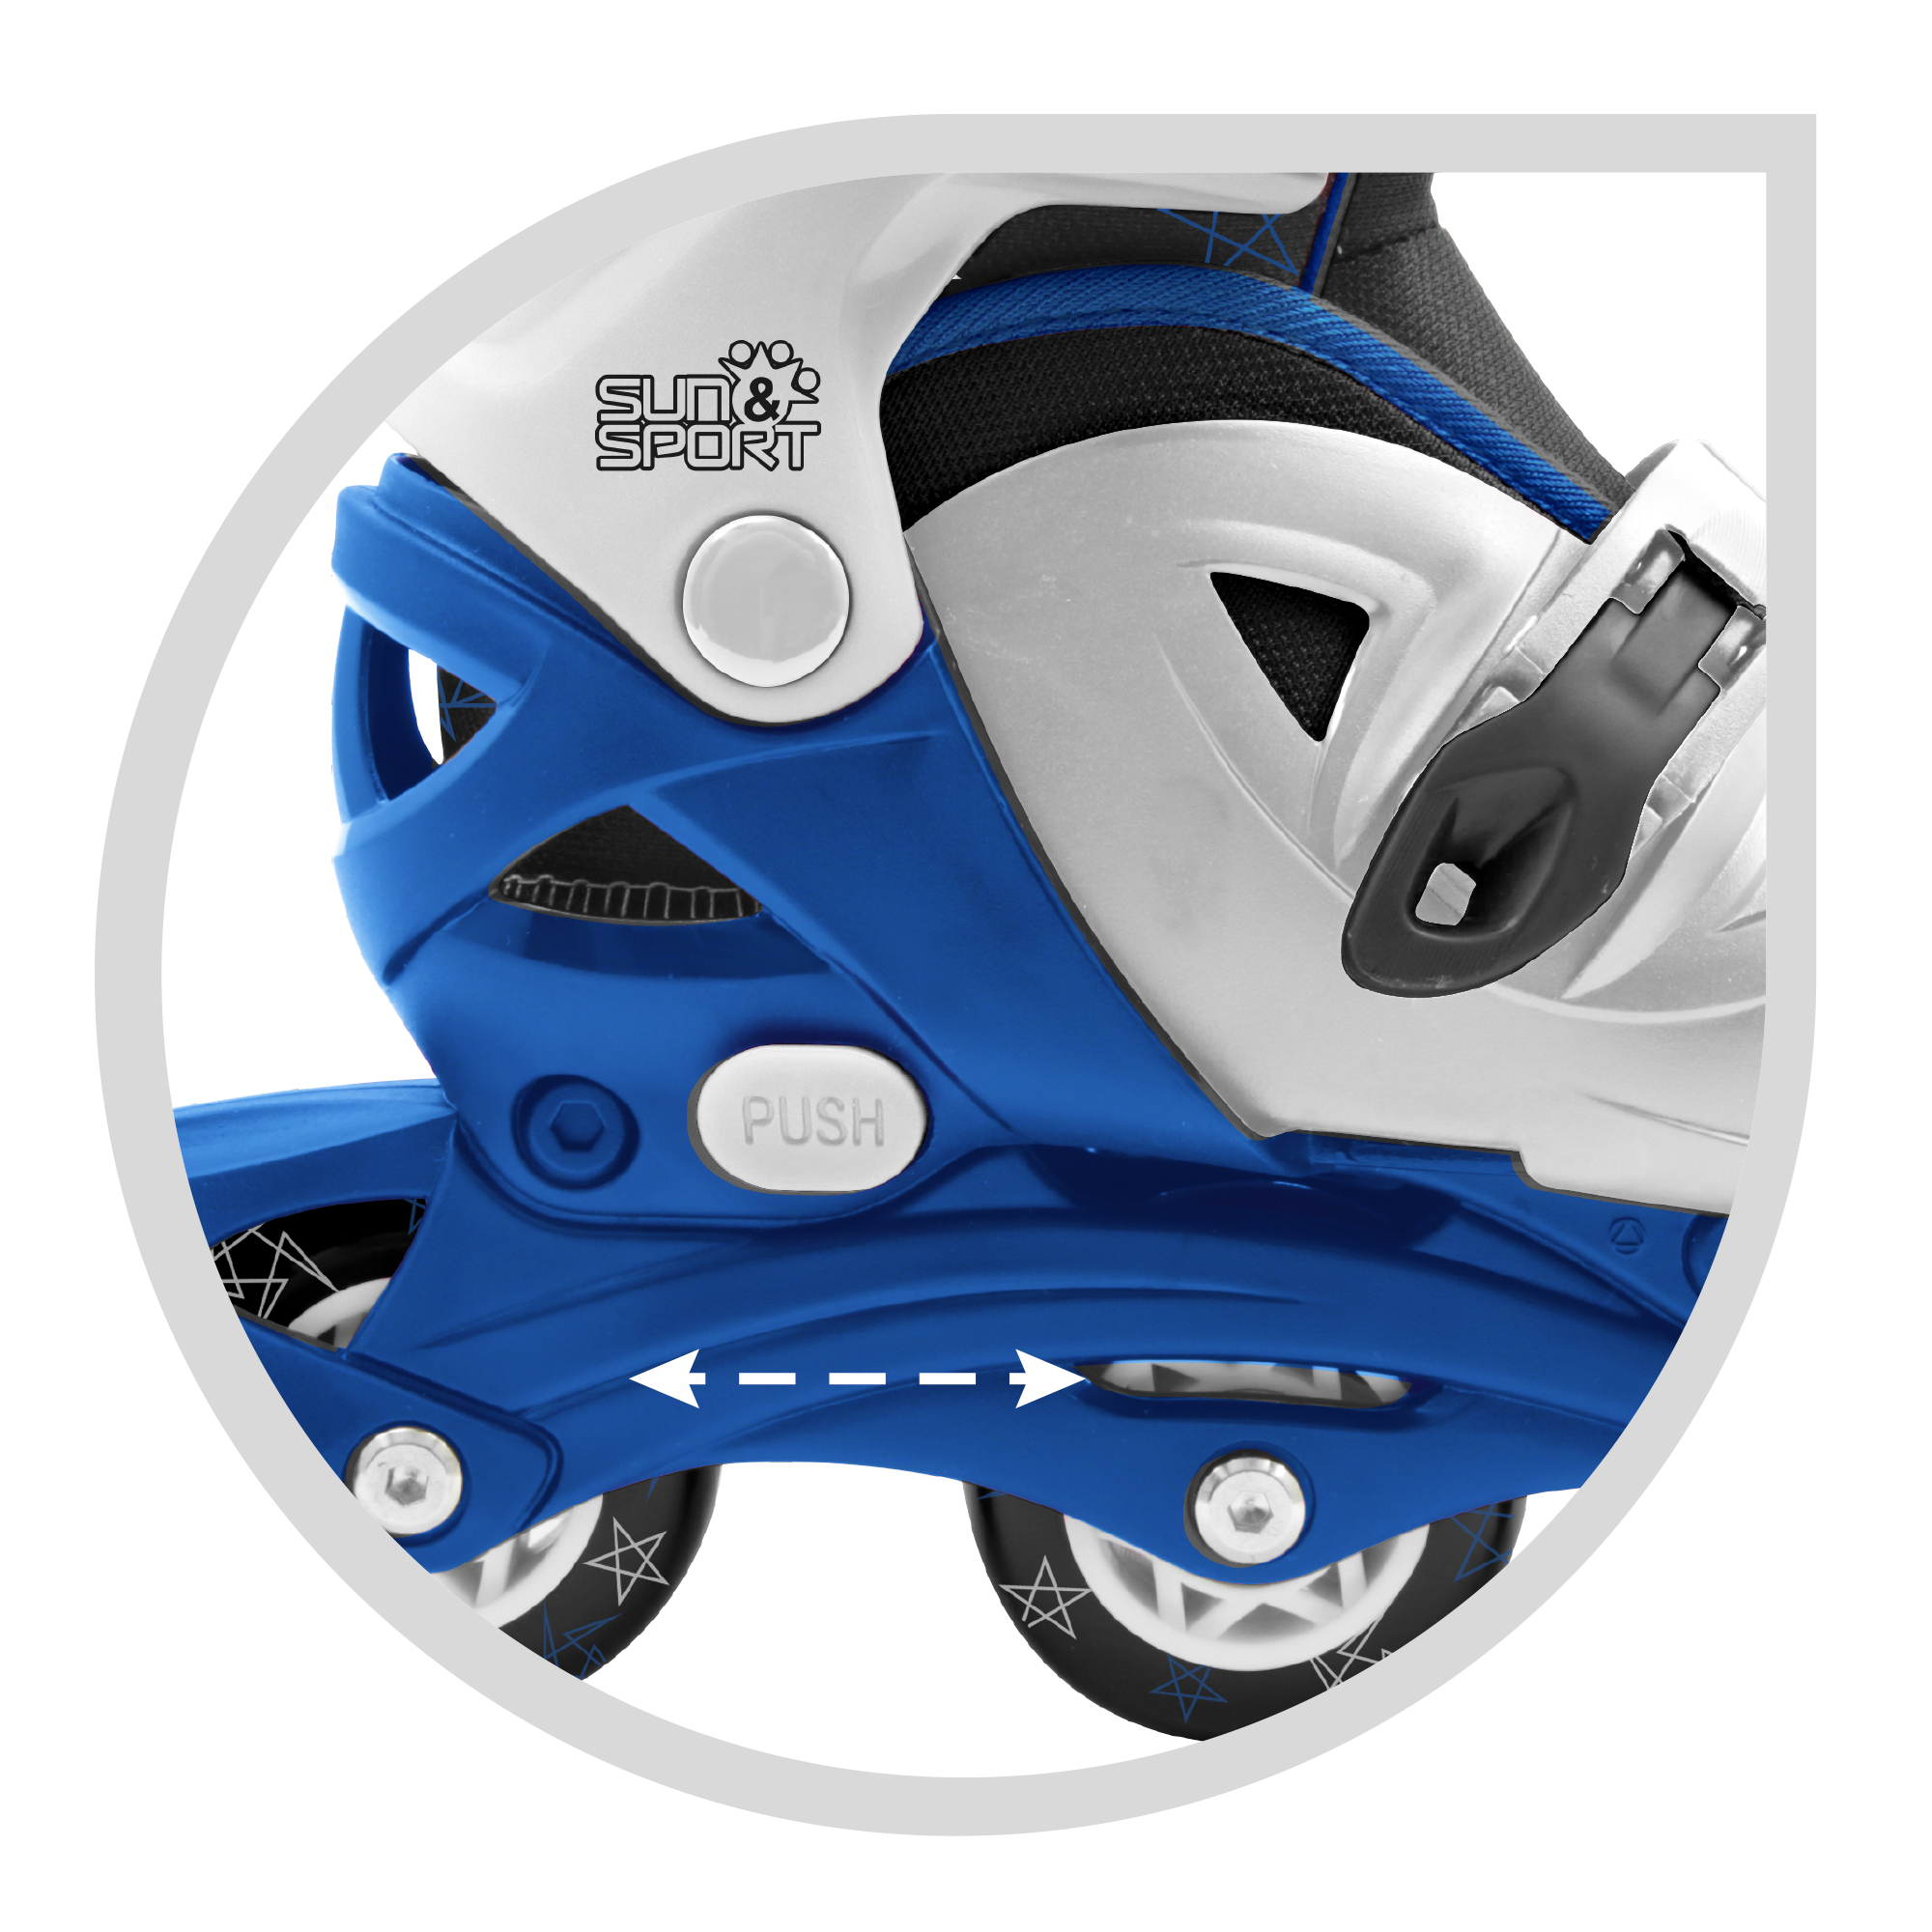 Pattini a 4 ruote con taglia regolabile e sistema frenante per bambini - misura 31-35, fibbie regolabili e imbottitura dello stivale - disponibile in blu e rosa - SUN&SPORT